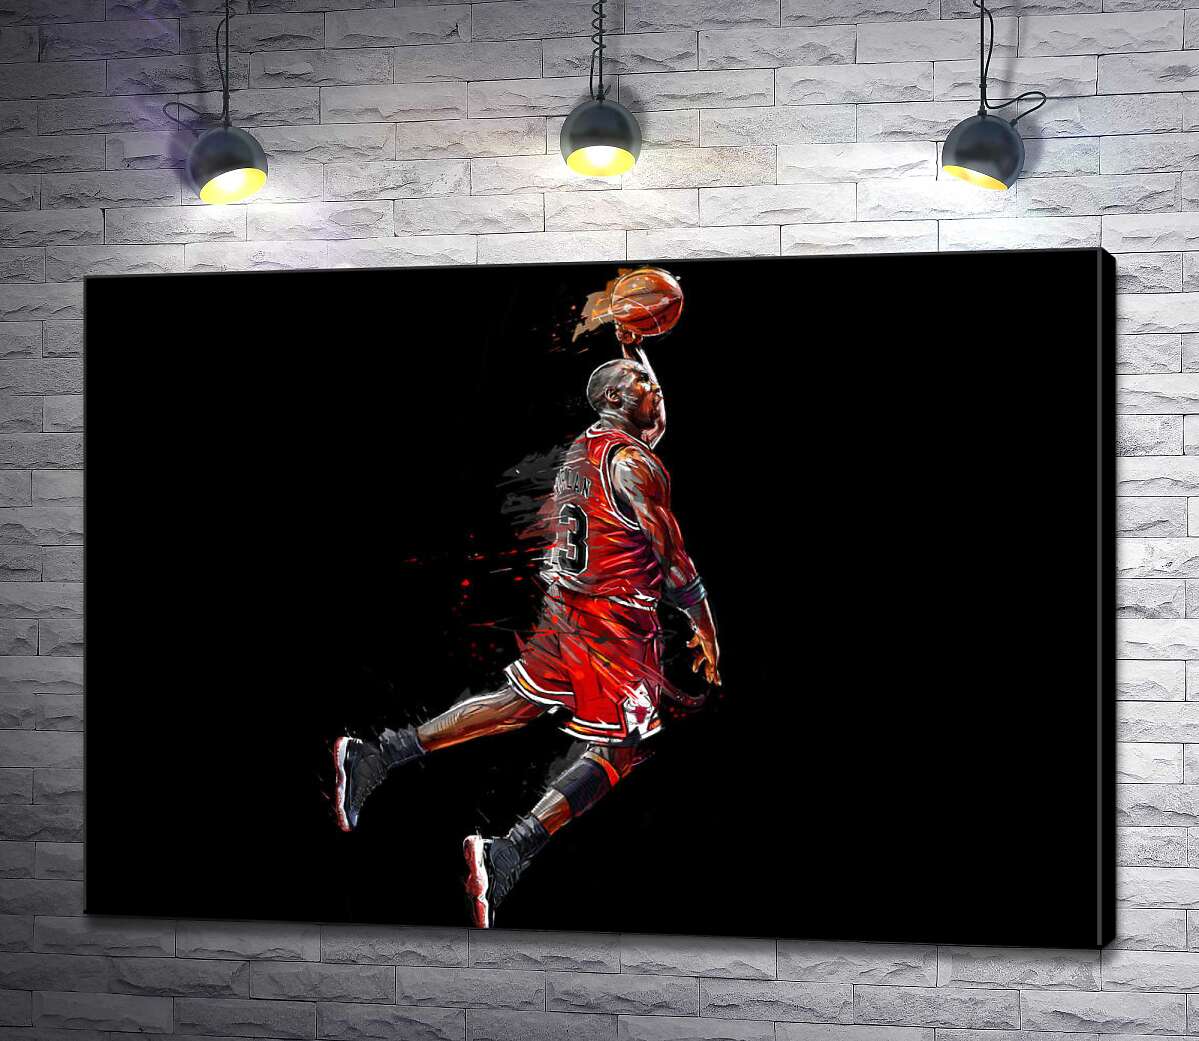 картина Легендарный баскетболист, Майкл Джордан (Michael Jordan), в прыжке